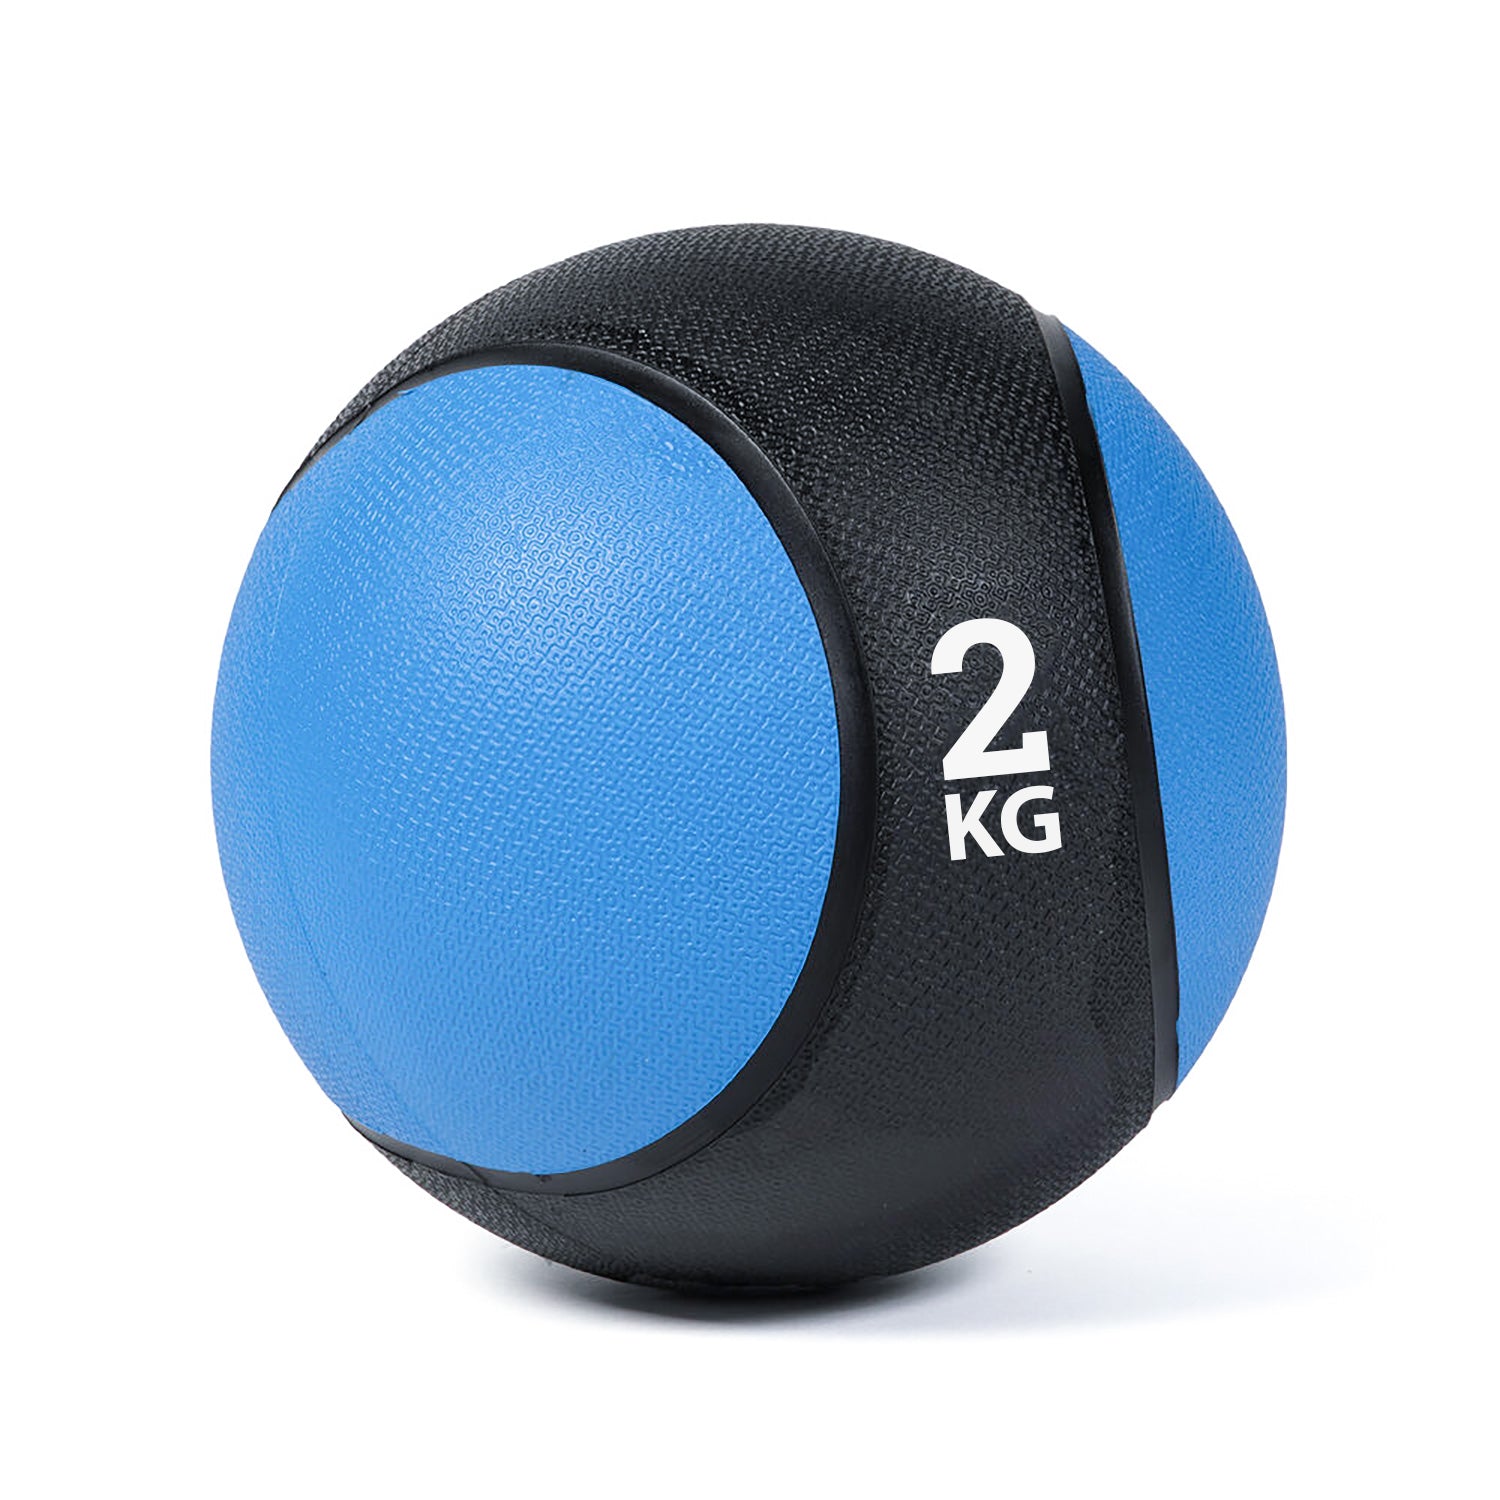 كرة طبية من المطاط لاعادة التأهيل و اللياقة البدنية - لون اسود و ازرق - وزن 2 كيلو جرام - Kanteen - كانتين